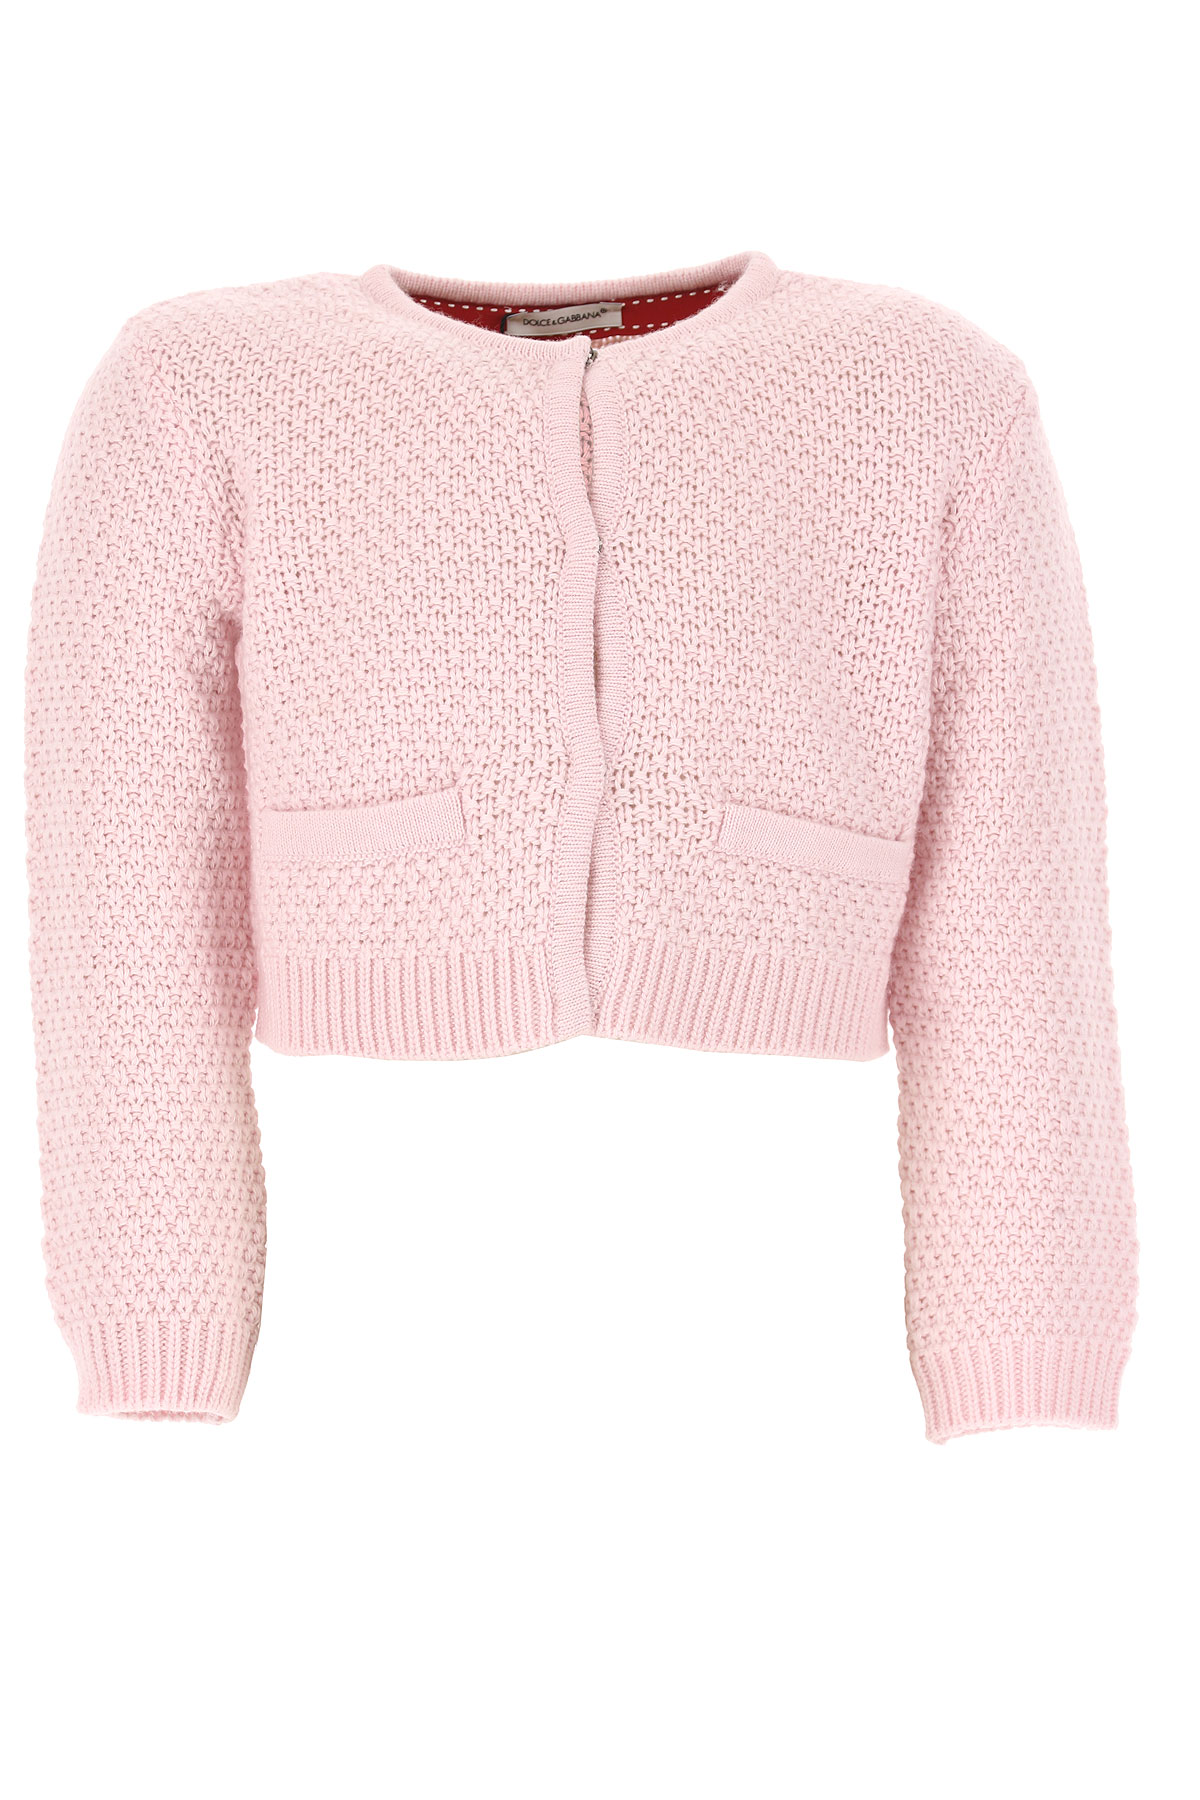 Dolce & Gabbana Kinder Pullover für Mädchen Günstig im Outlet Sale, Pink, Polyamid, 2017, 12Y 2Y 8Y